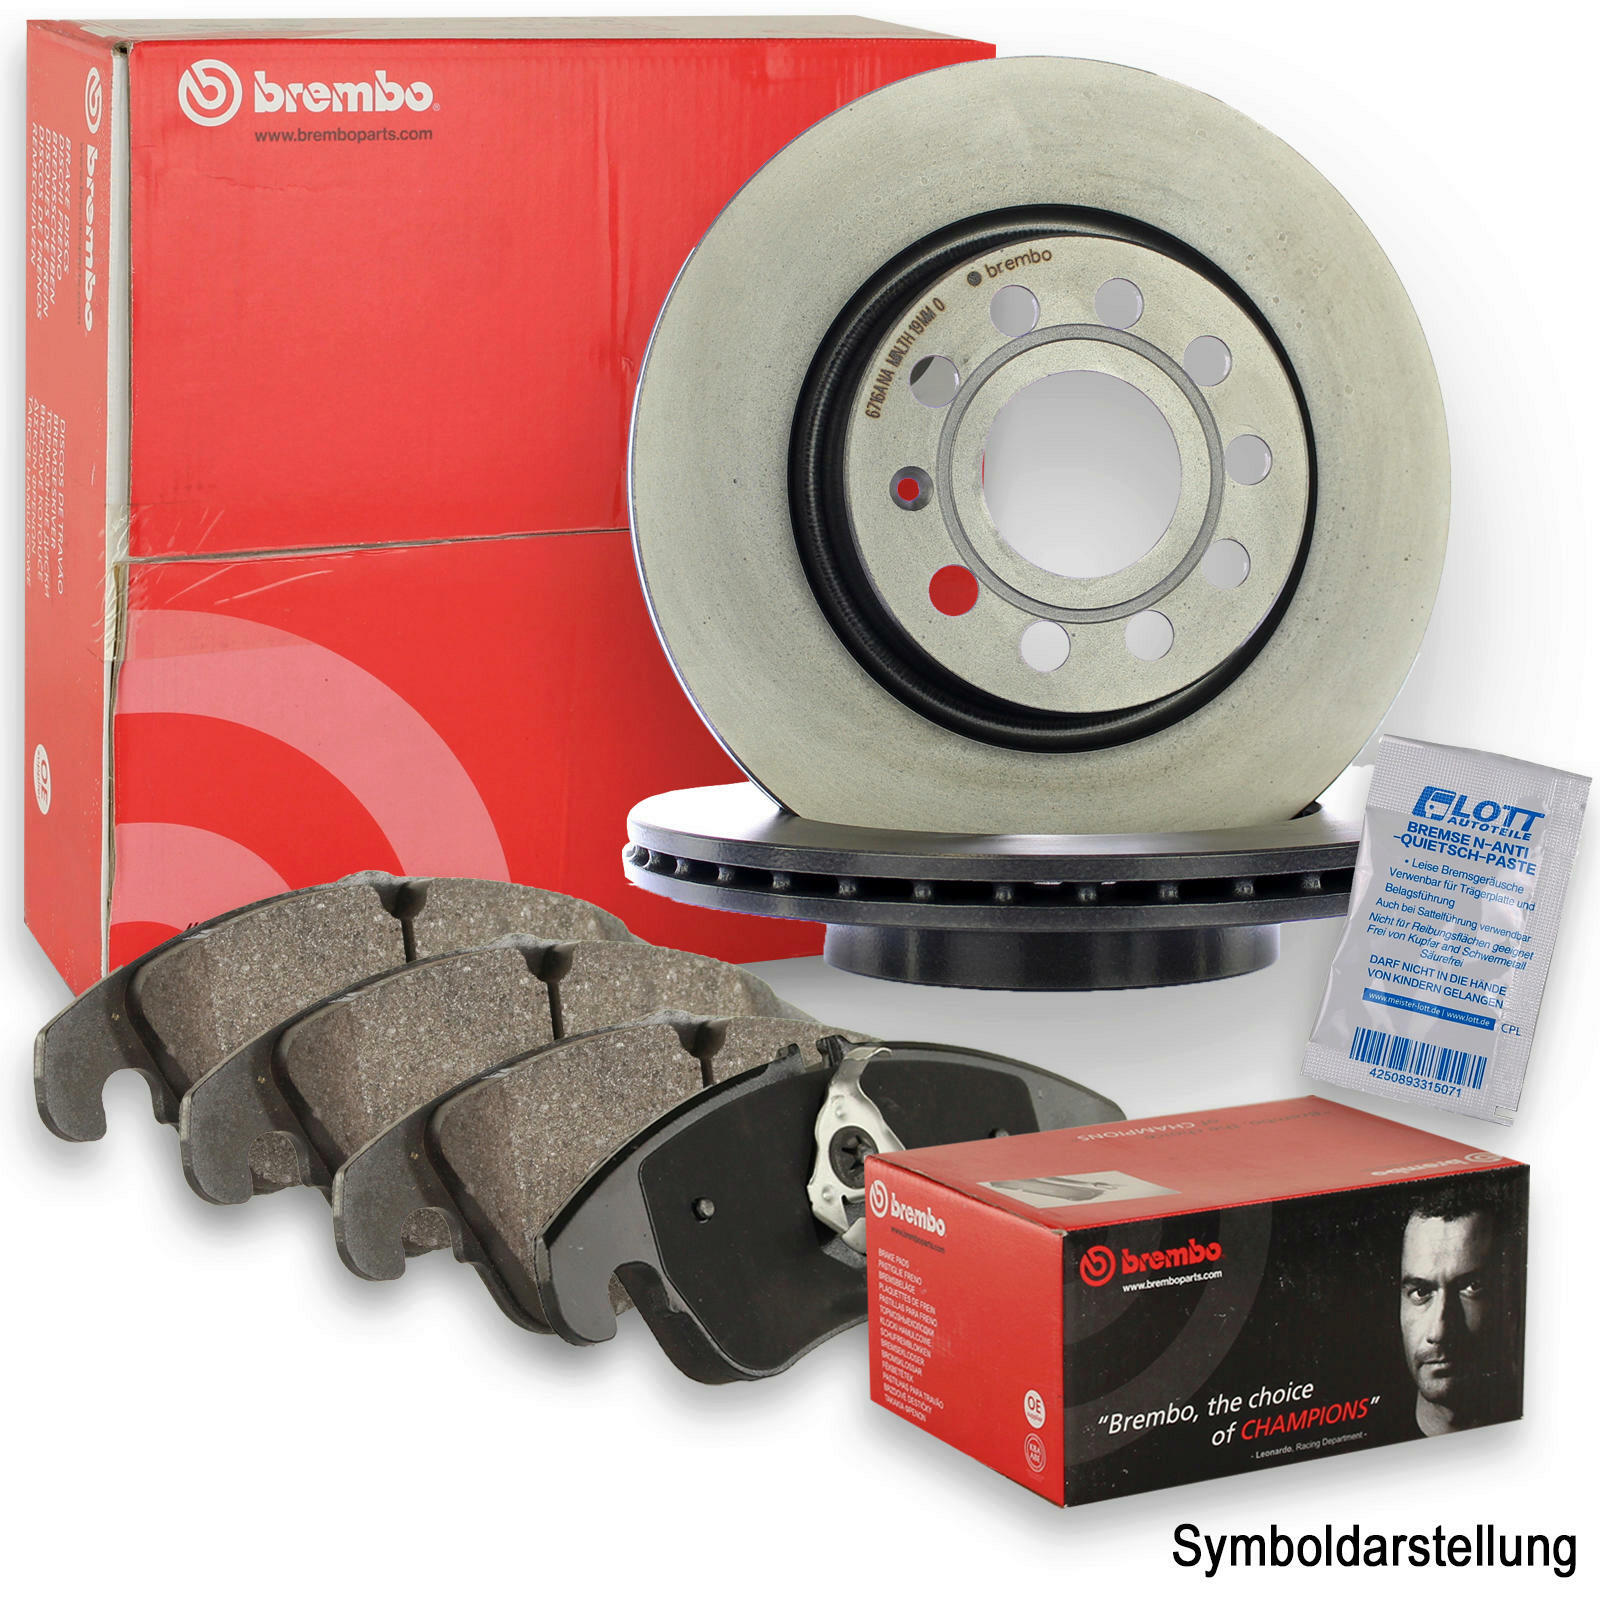 2x Brembo brake discs + Brembo brake pads blocks brake set kit